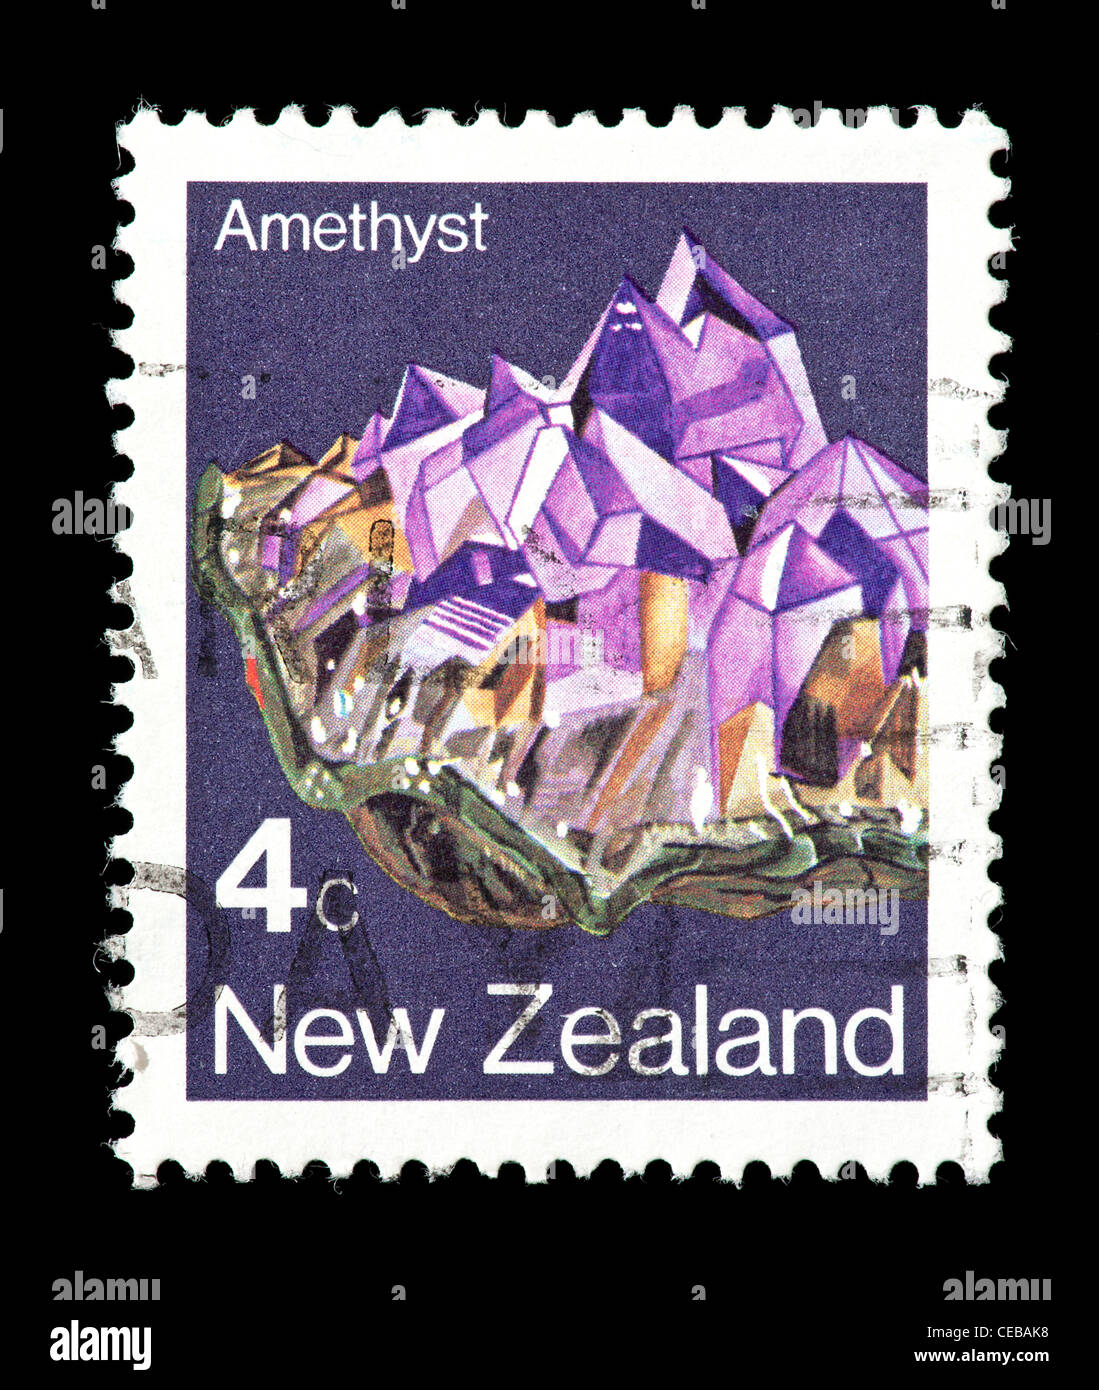 Timbre-poste de Nouvelle-zélande dépeignant des cristaux d'améthyste. Banque D'Images